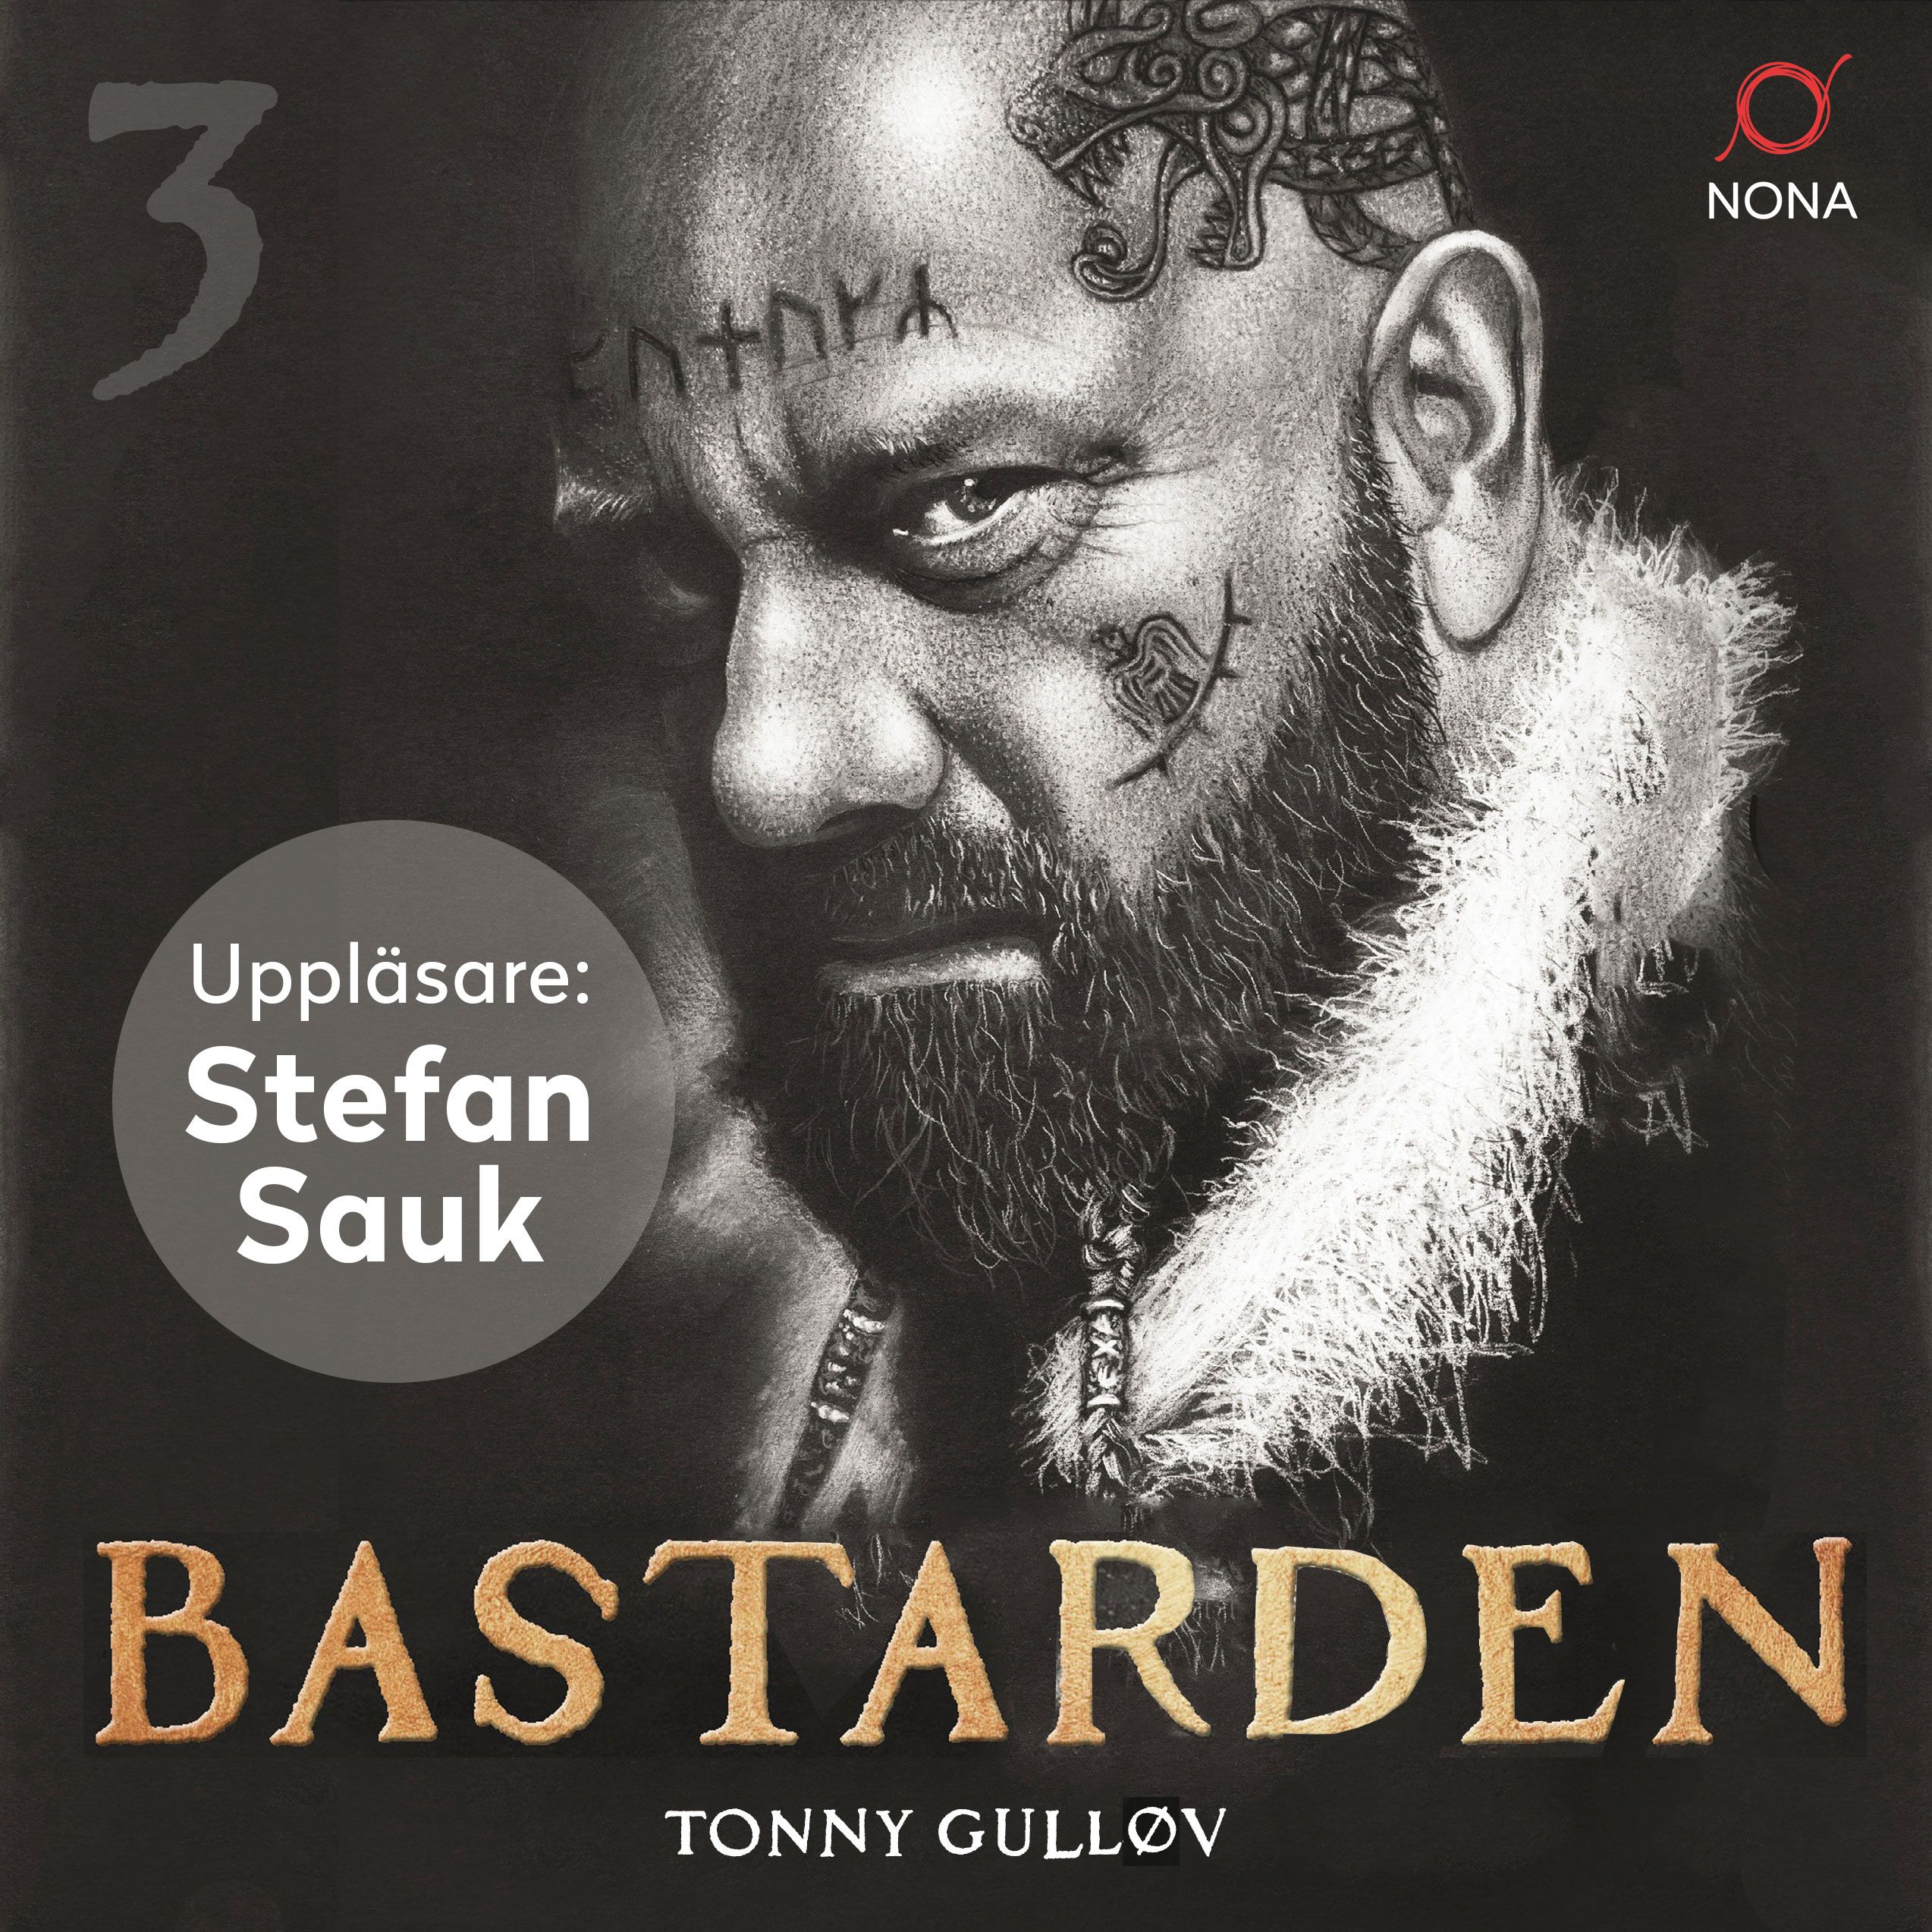 Bastarden, ljudbok av Tonny Gulløv